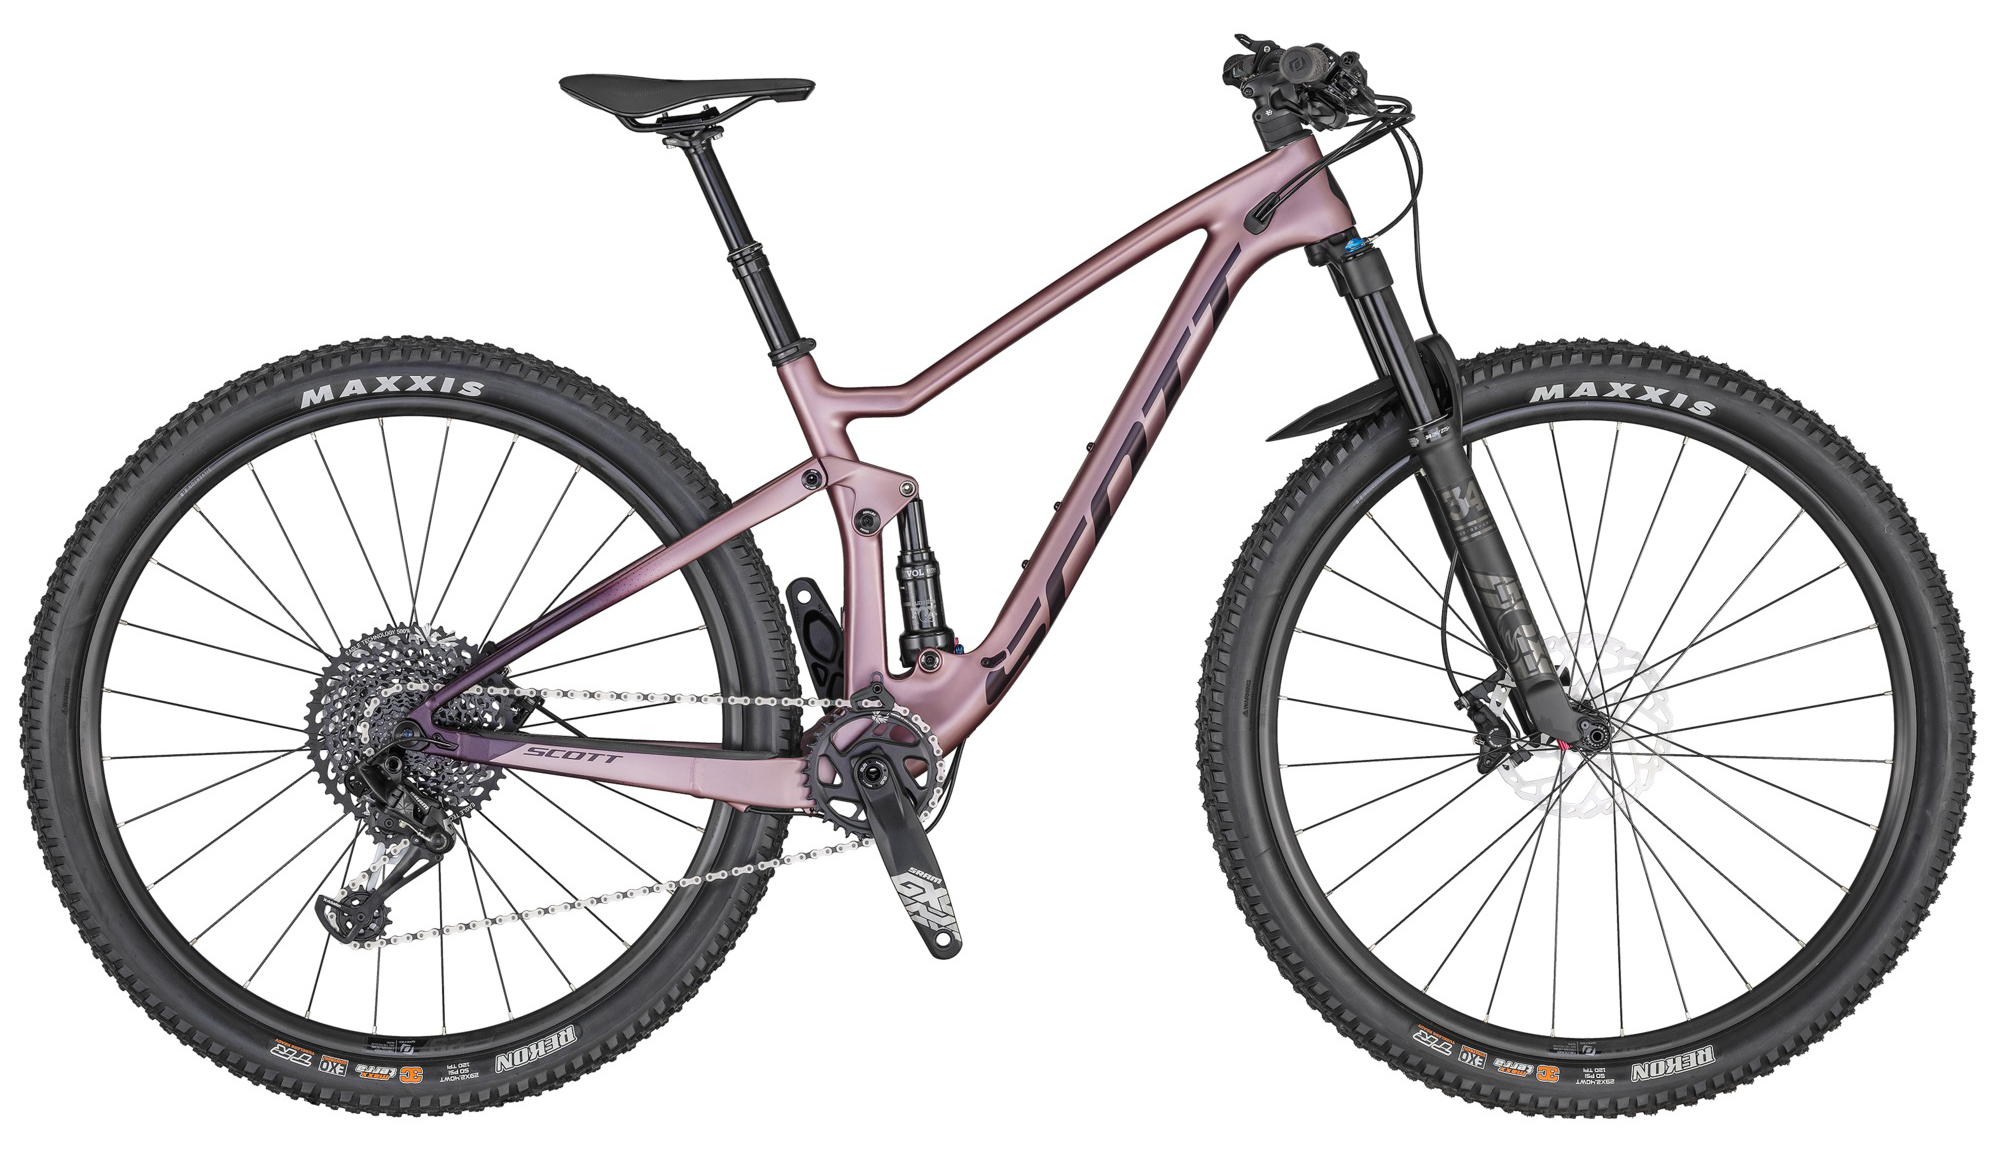  Отзывы о Двухподвесном велосипеде Scott Contessa Spark 910 2020